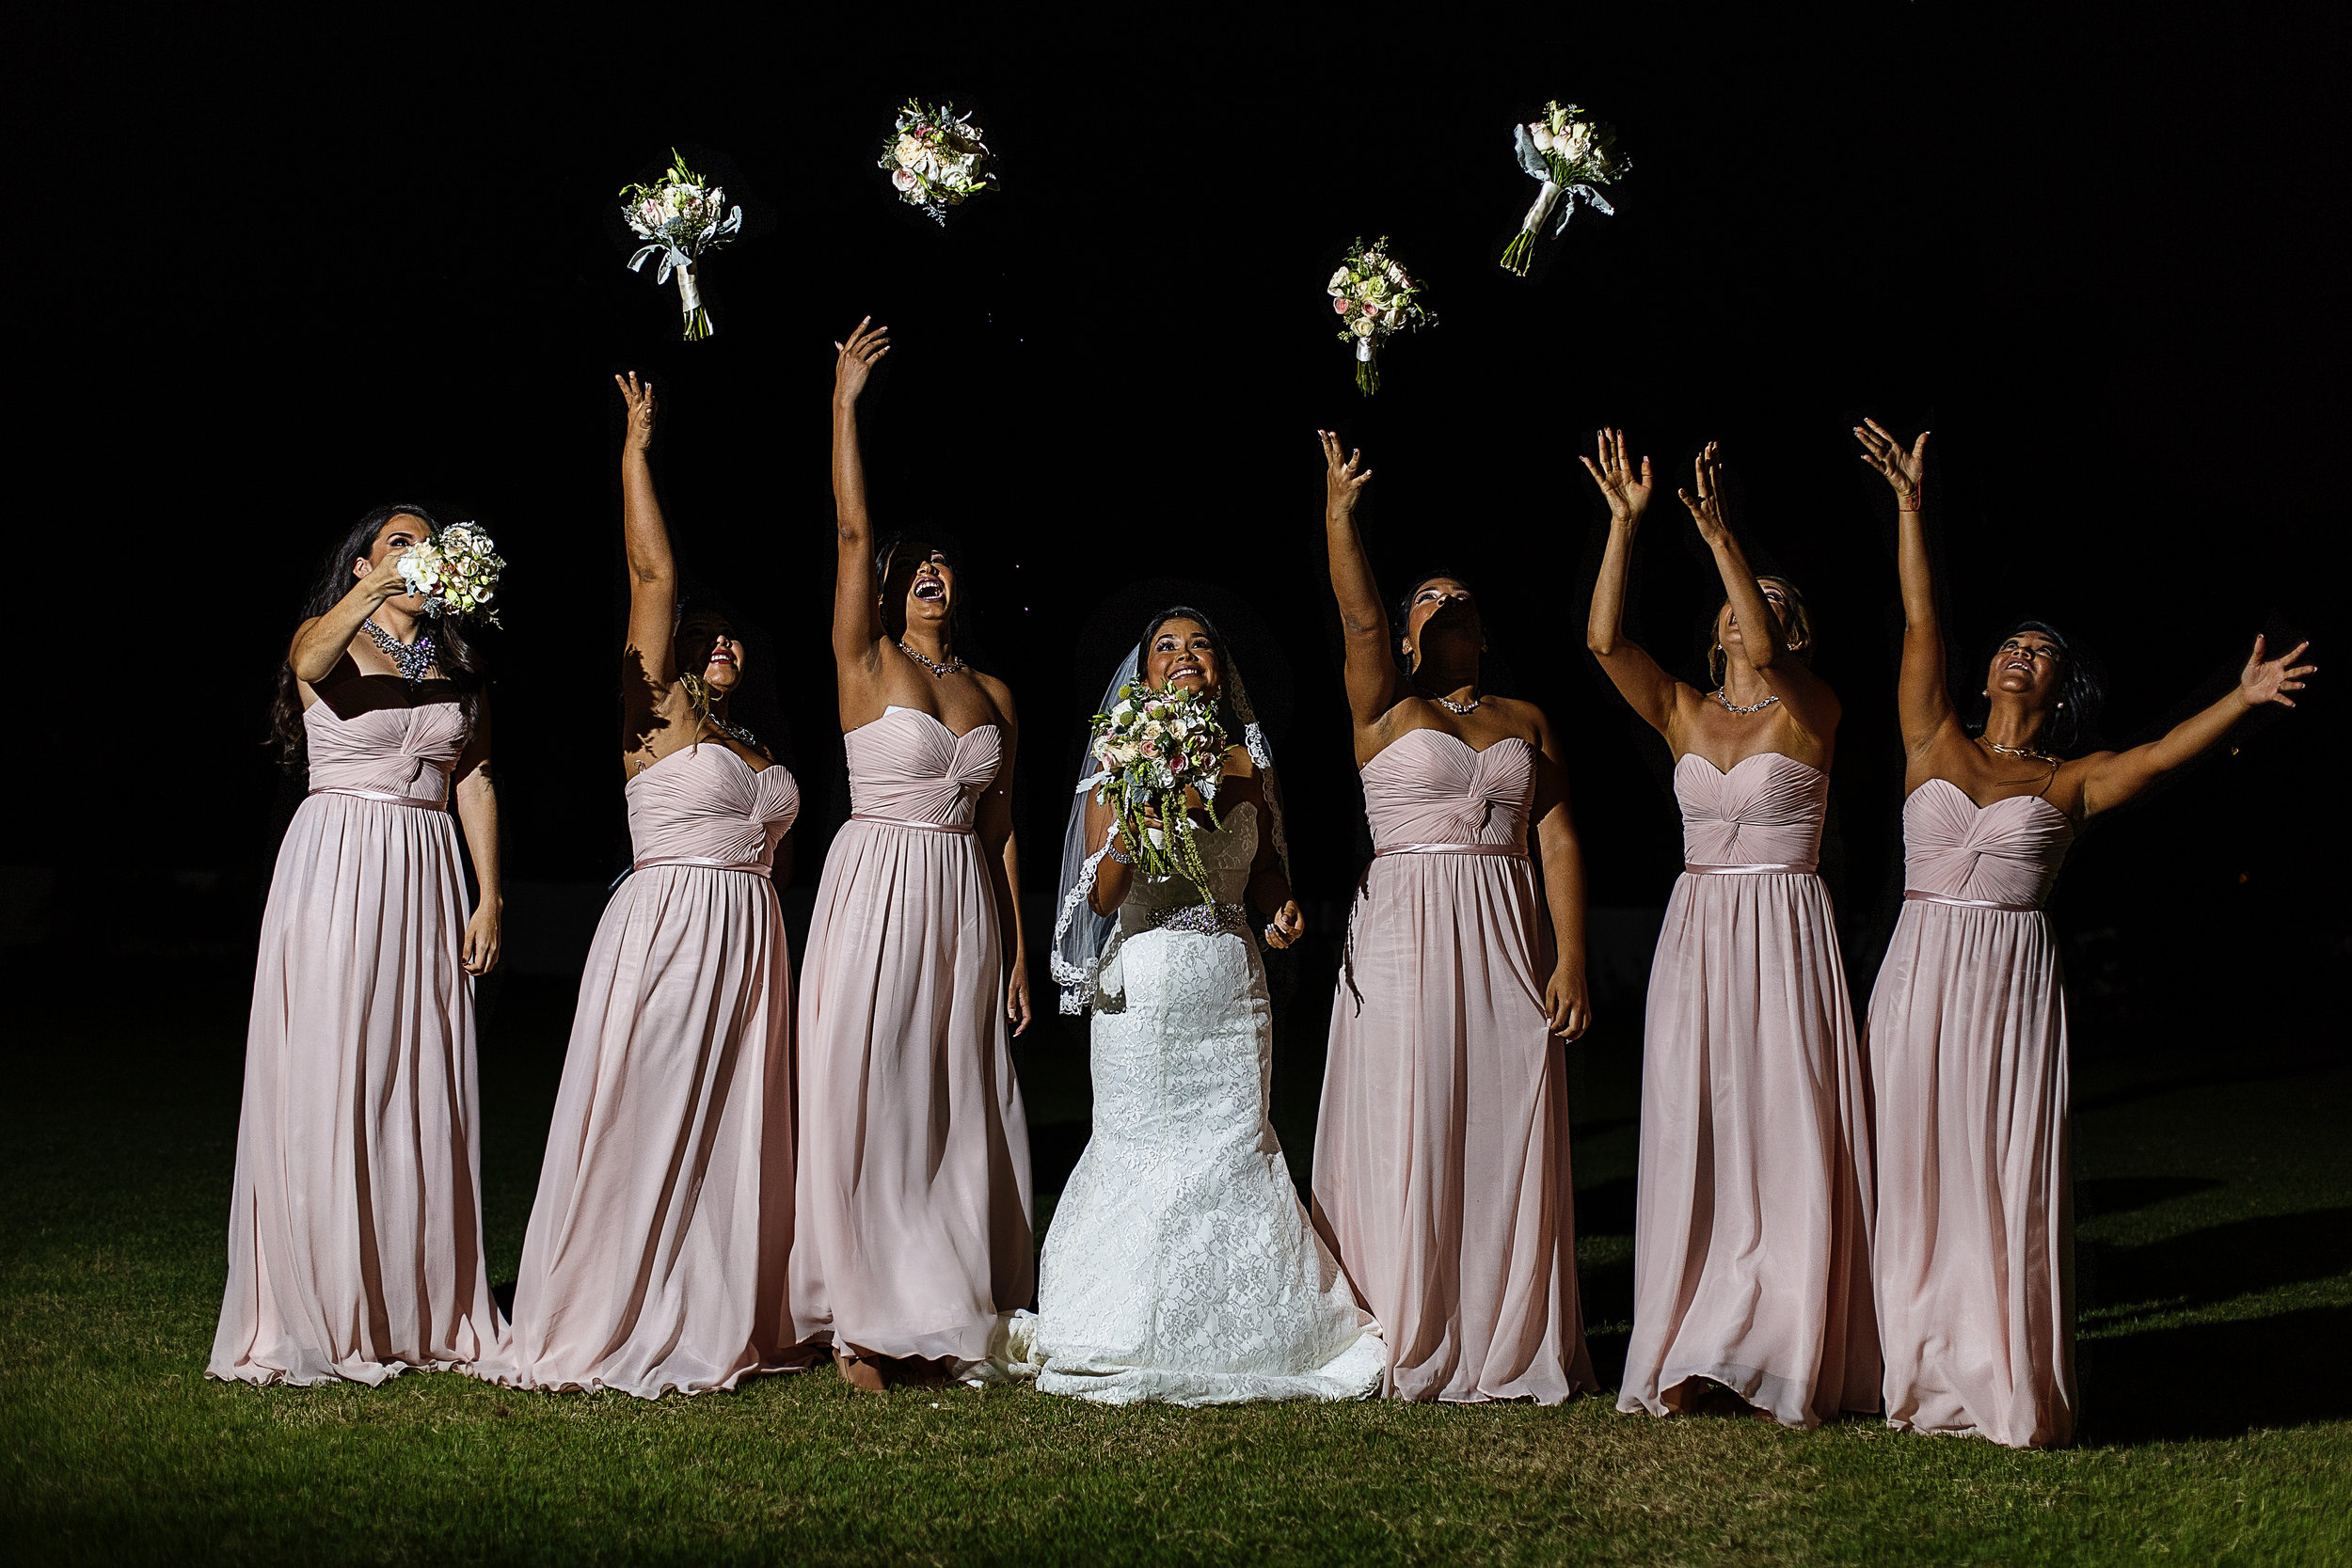 Retrato de la novia con sus damas lanzando los ramos al cielo